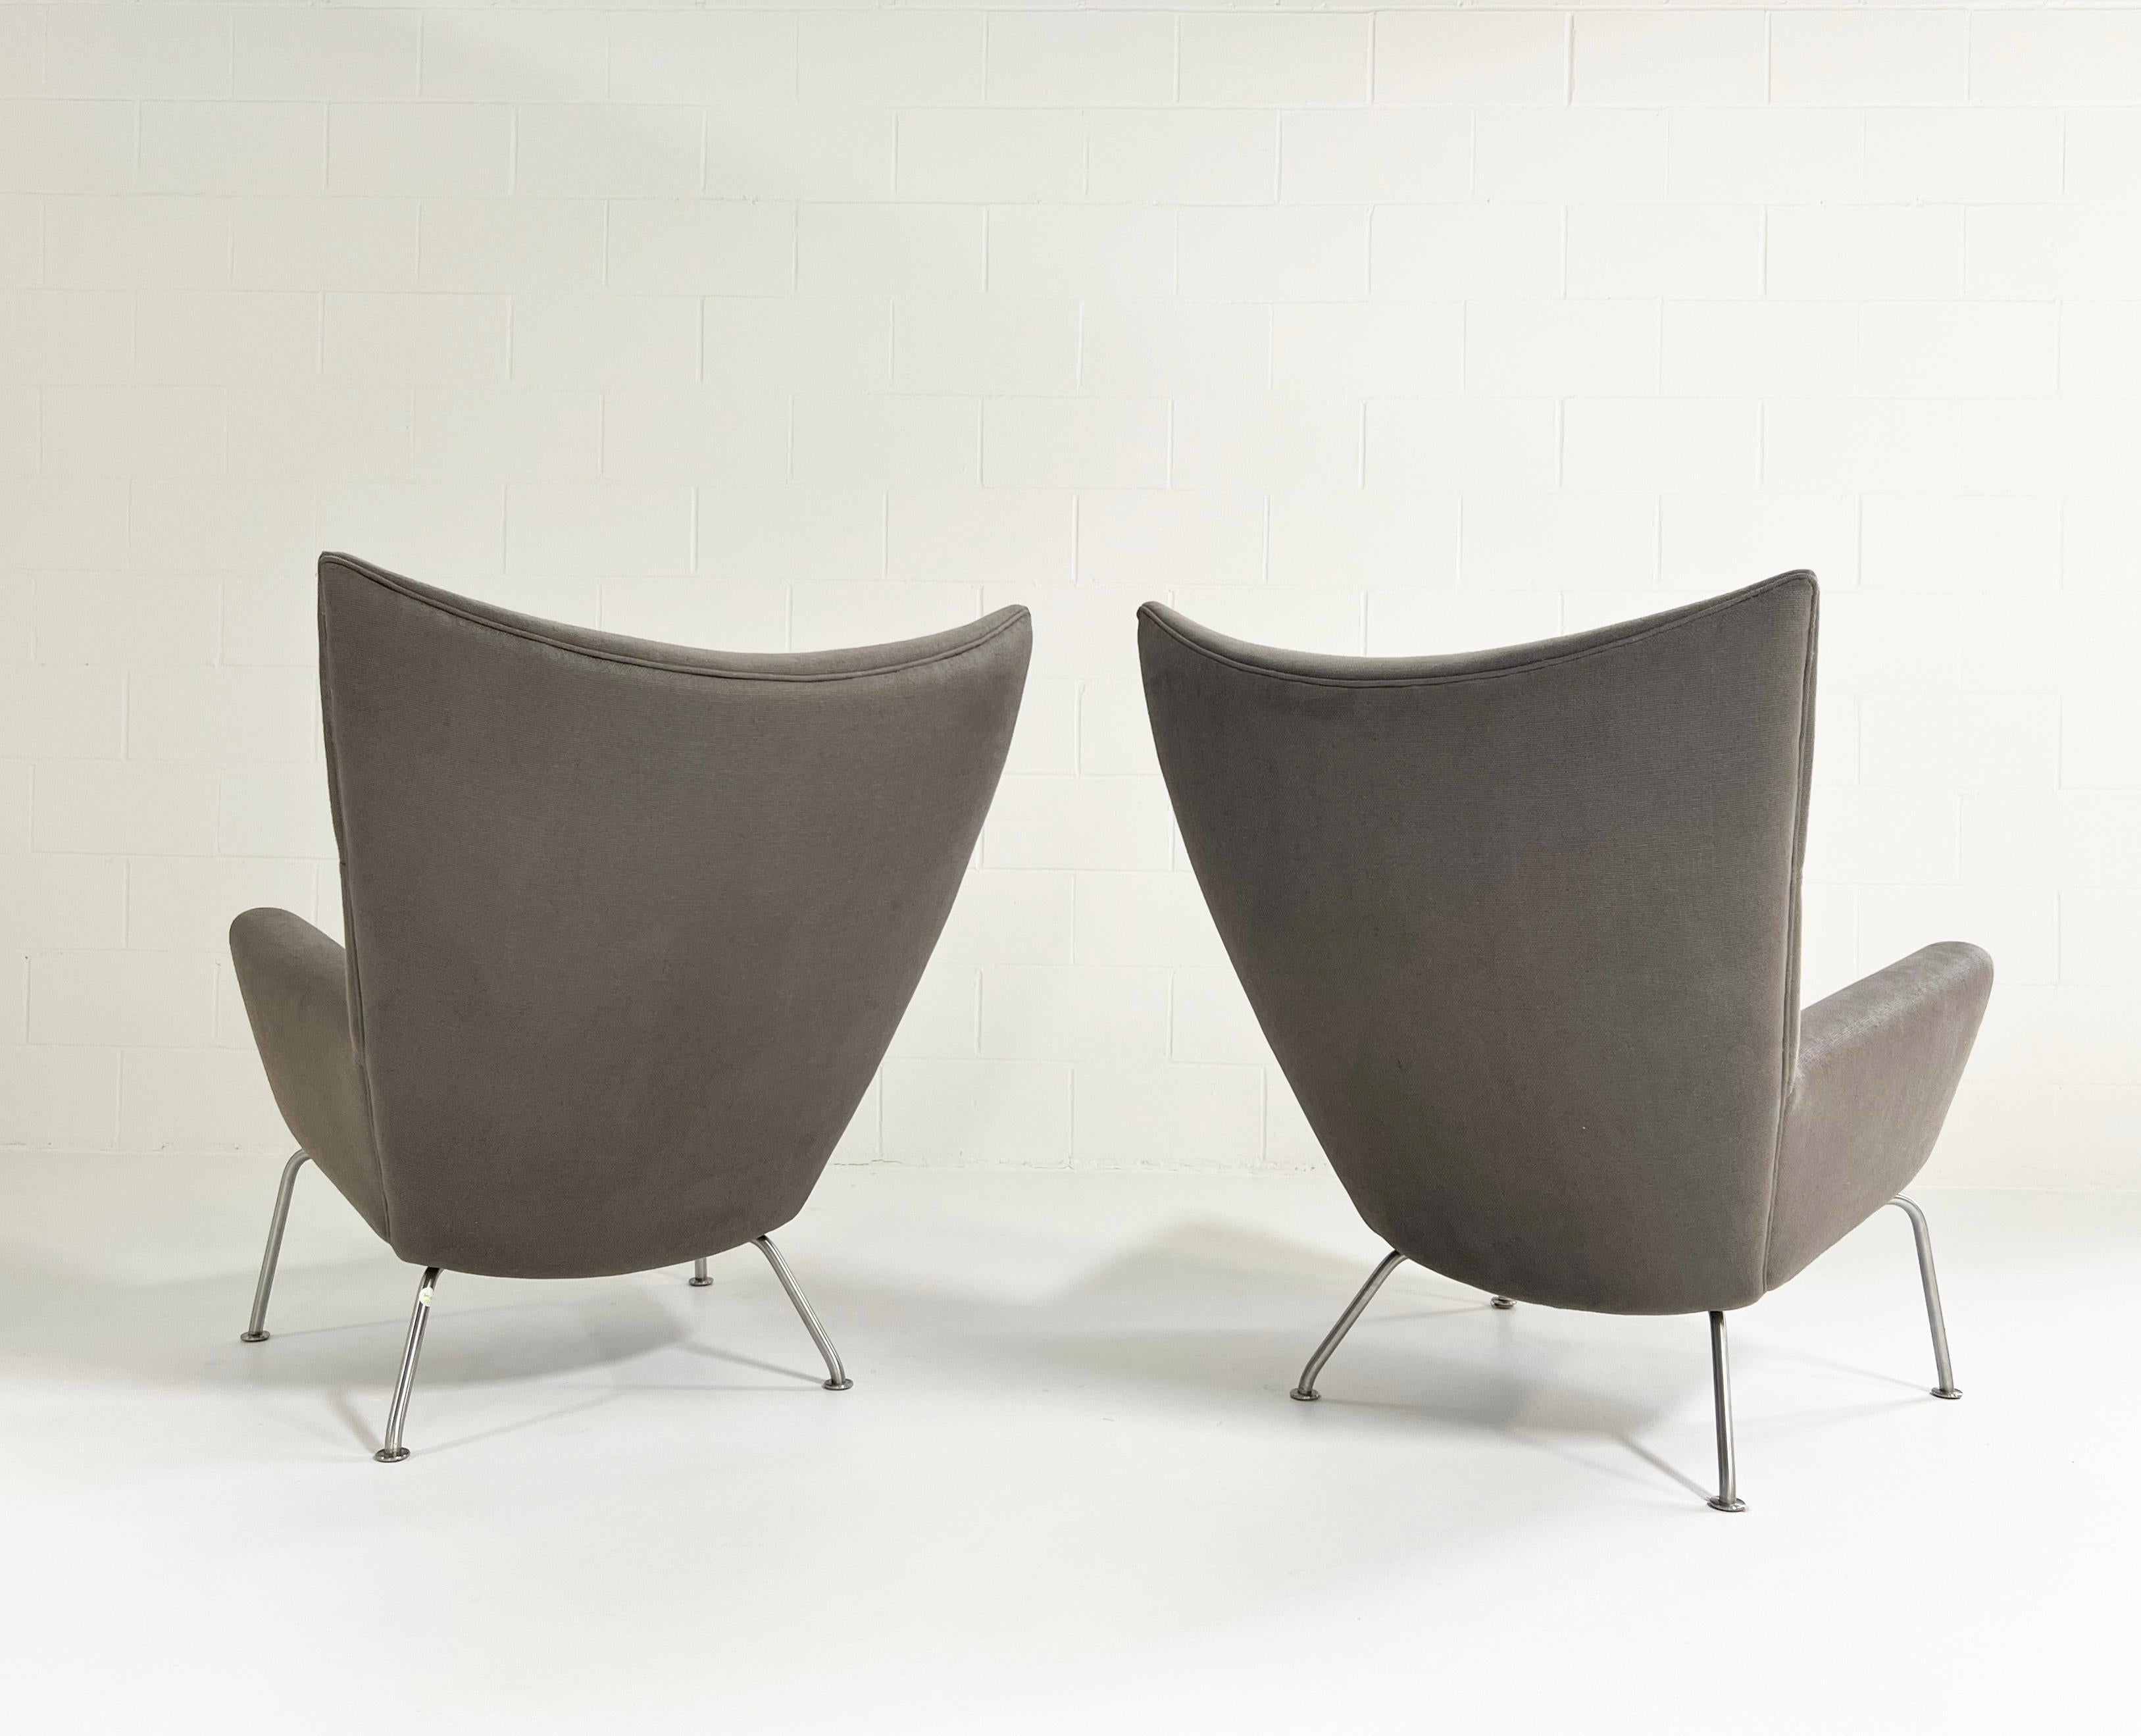 Von der Website von Carl Hansen & Søn: Der CH445 Ohrensessel ist ein hochlehniger, gepolsterter Sessel mit einem Gestell aus Edelstahl. Hans J. Wegners Expertise für skulpturales Design und sein Anspruch an handwerkliche Qualität kommen in diesem